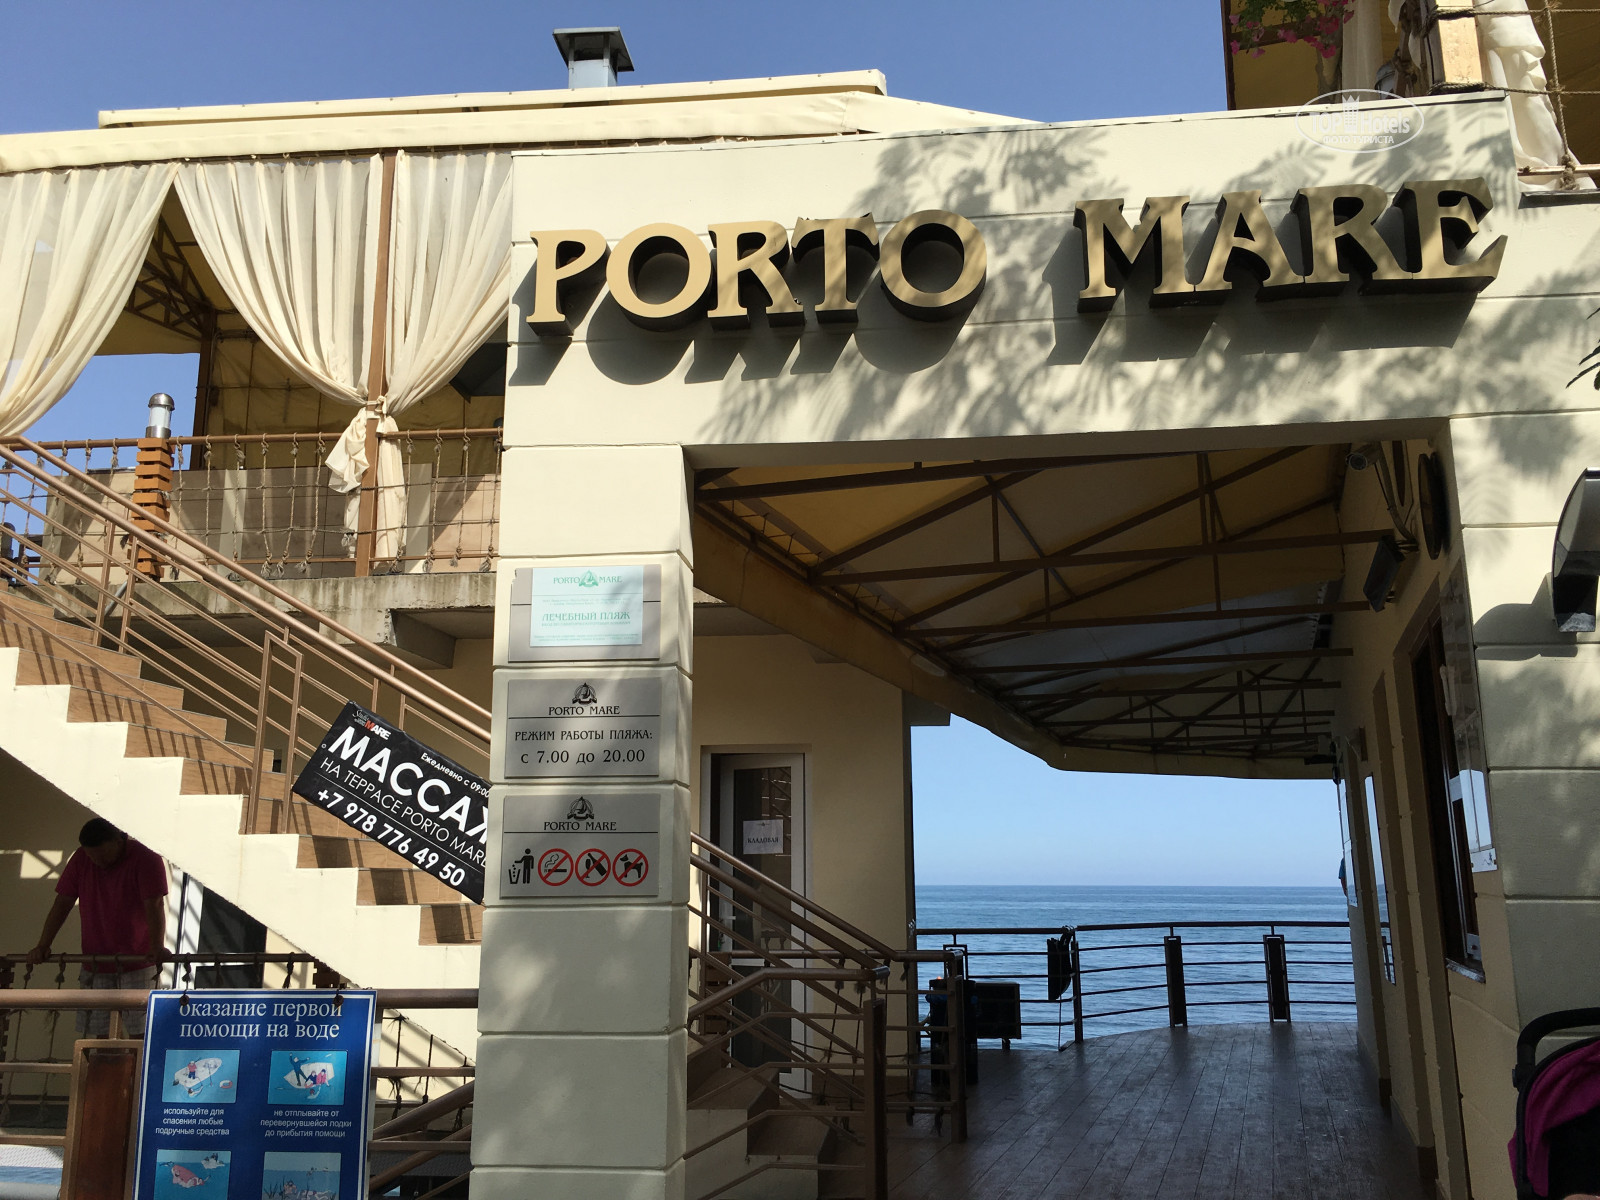 Порто маре фото